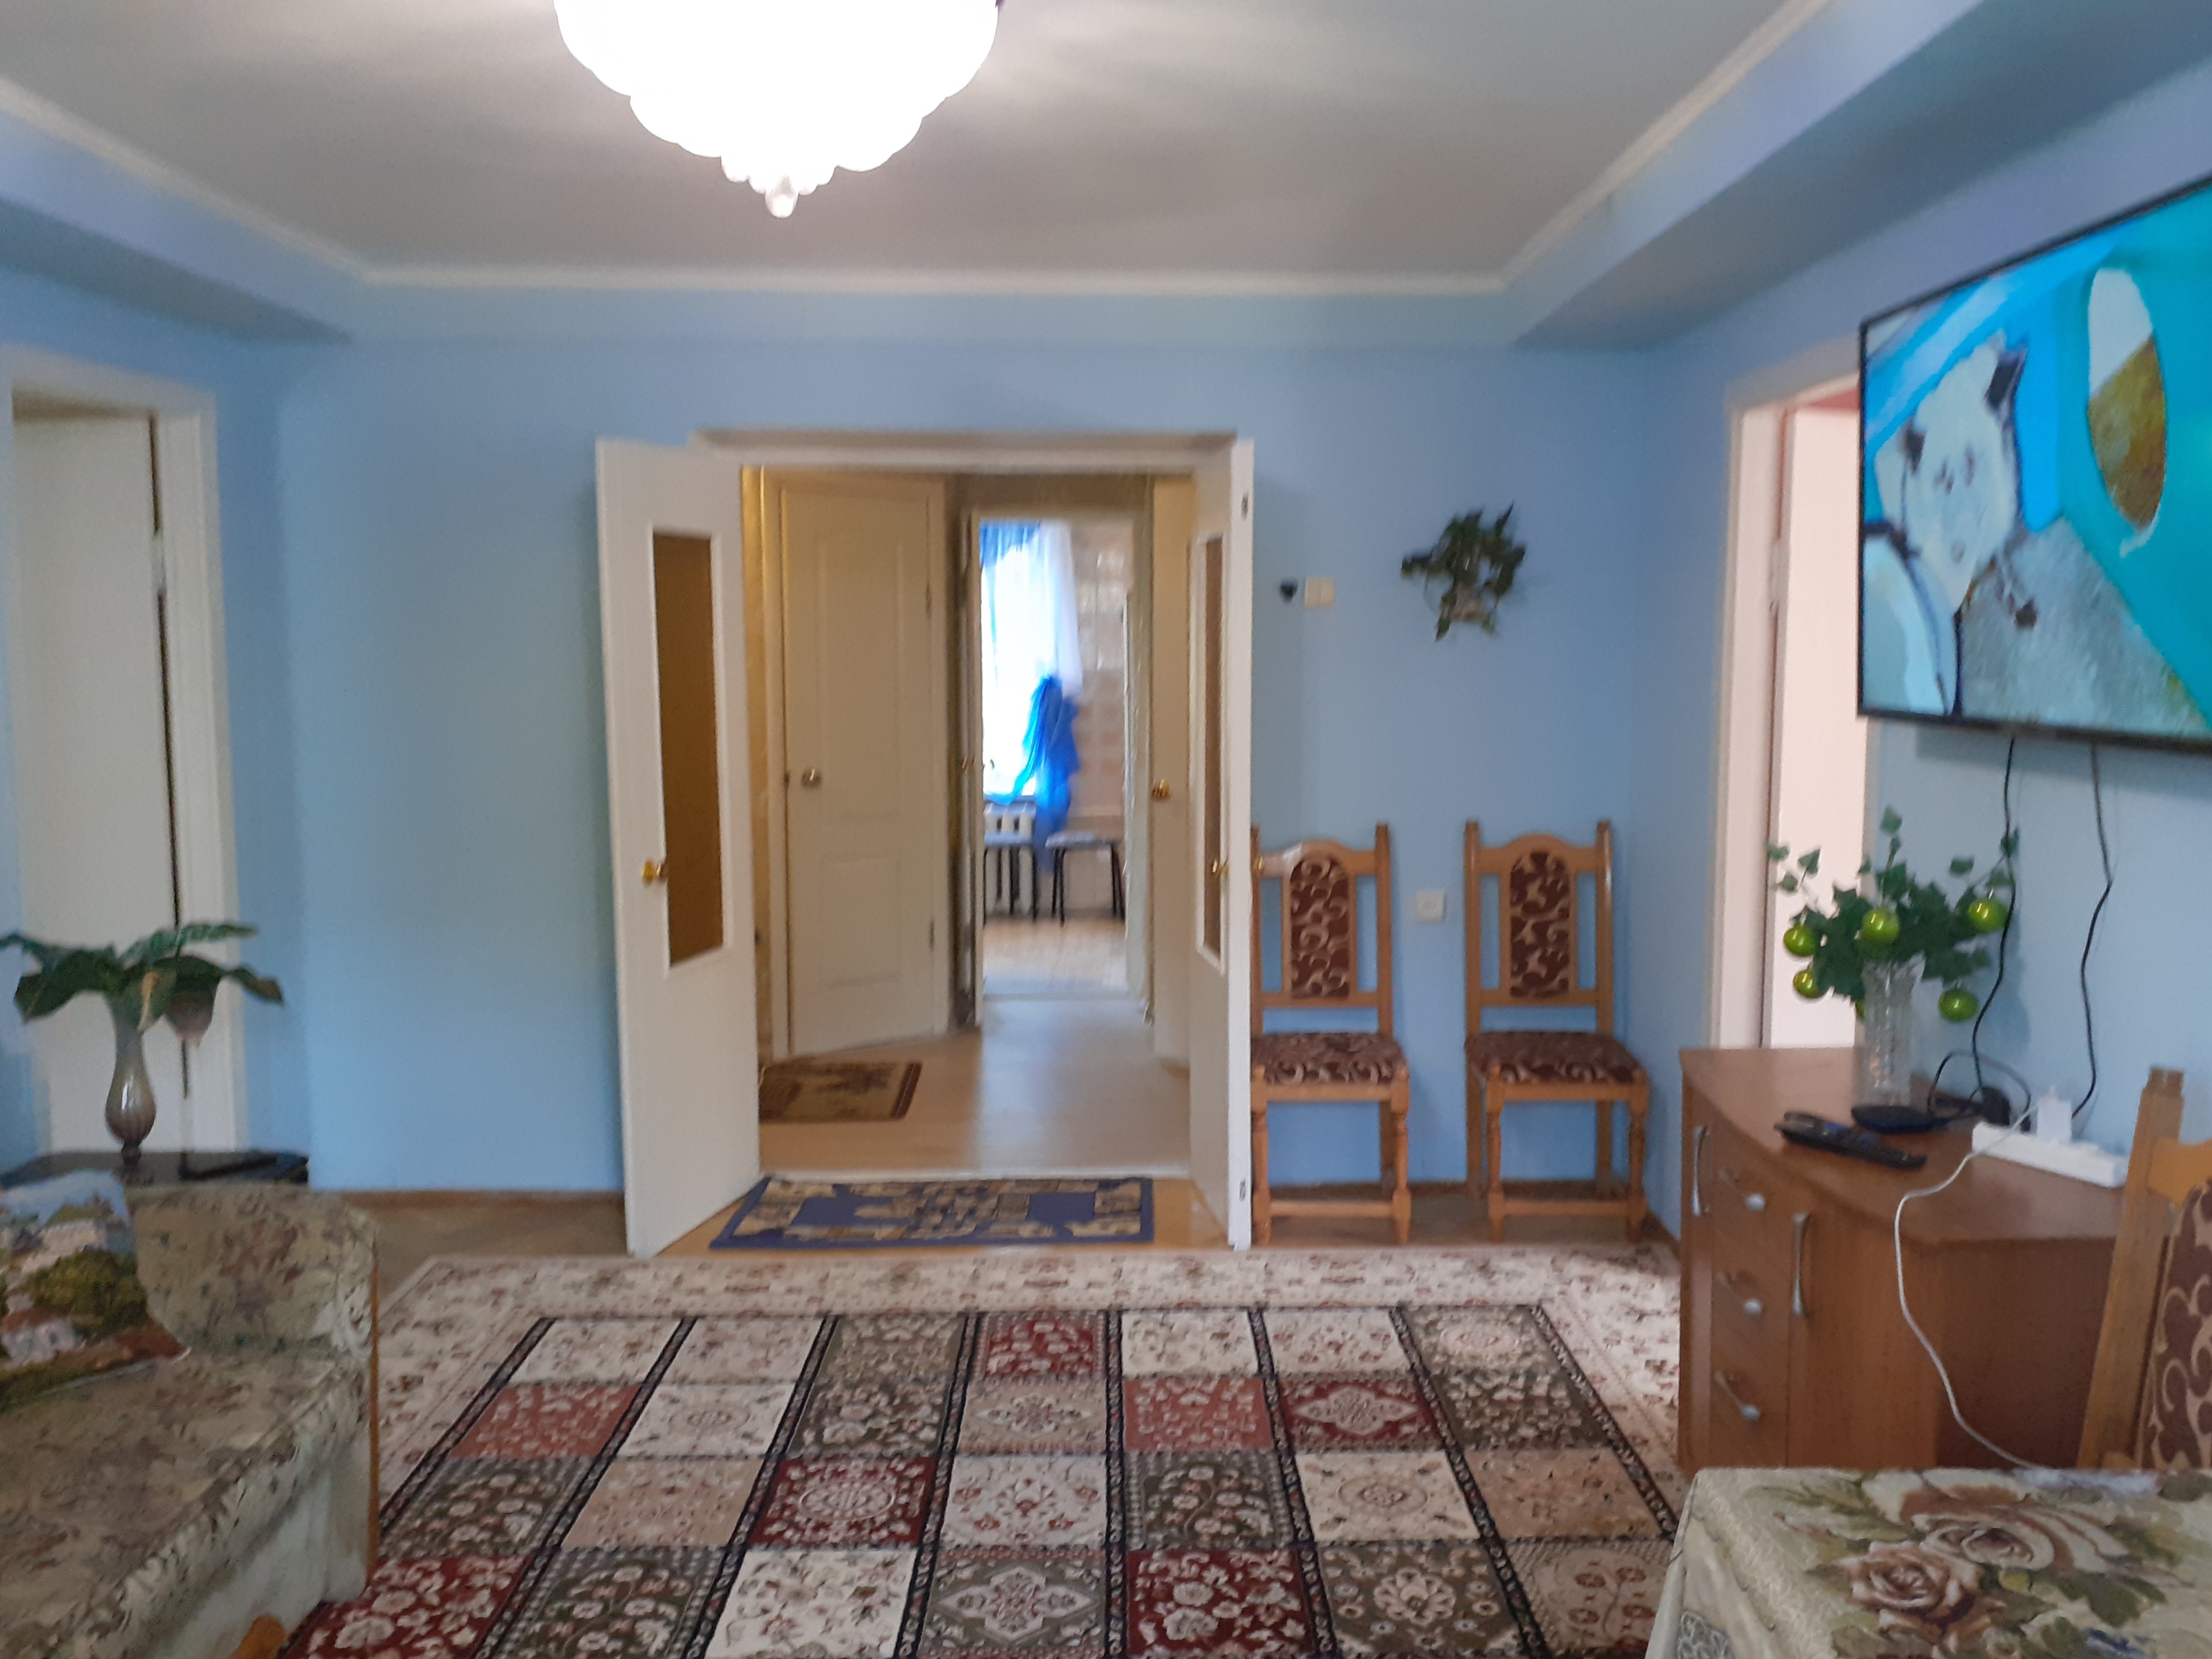 〚 Стильная смарт-квартира для молодой семьи в Киеве (50 кв. м) 〛 ◾ Фото ◾ Идеи ◾ Дизайн